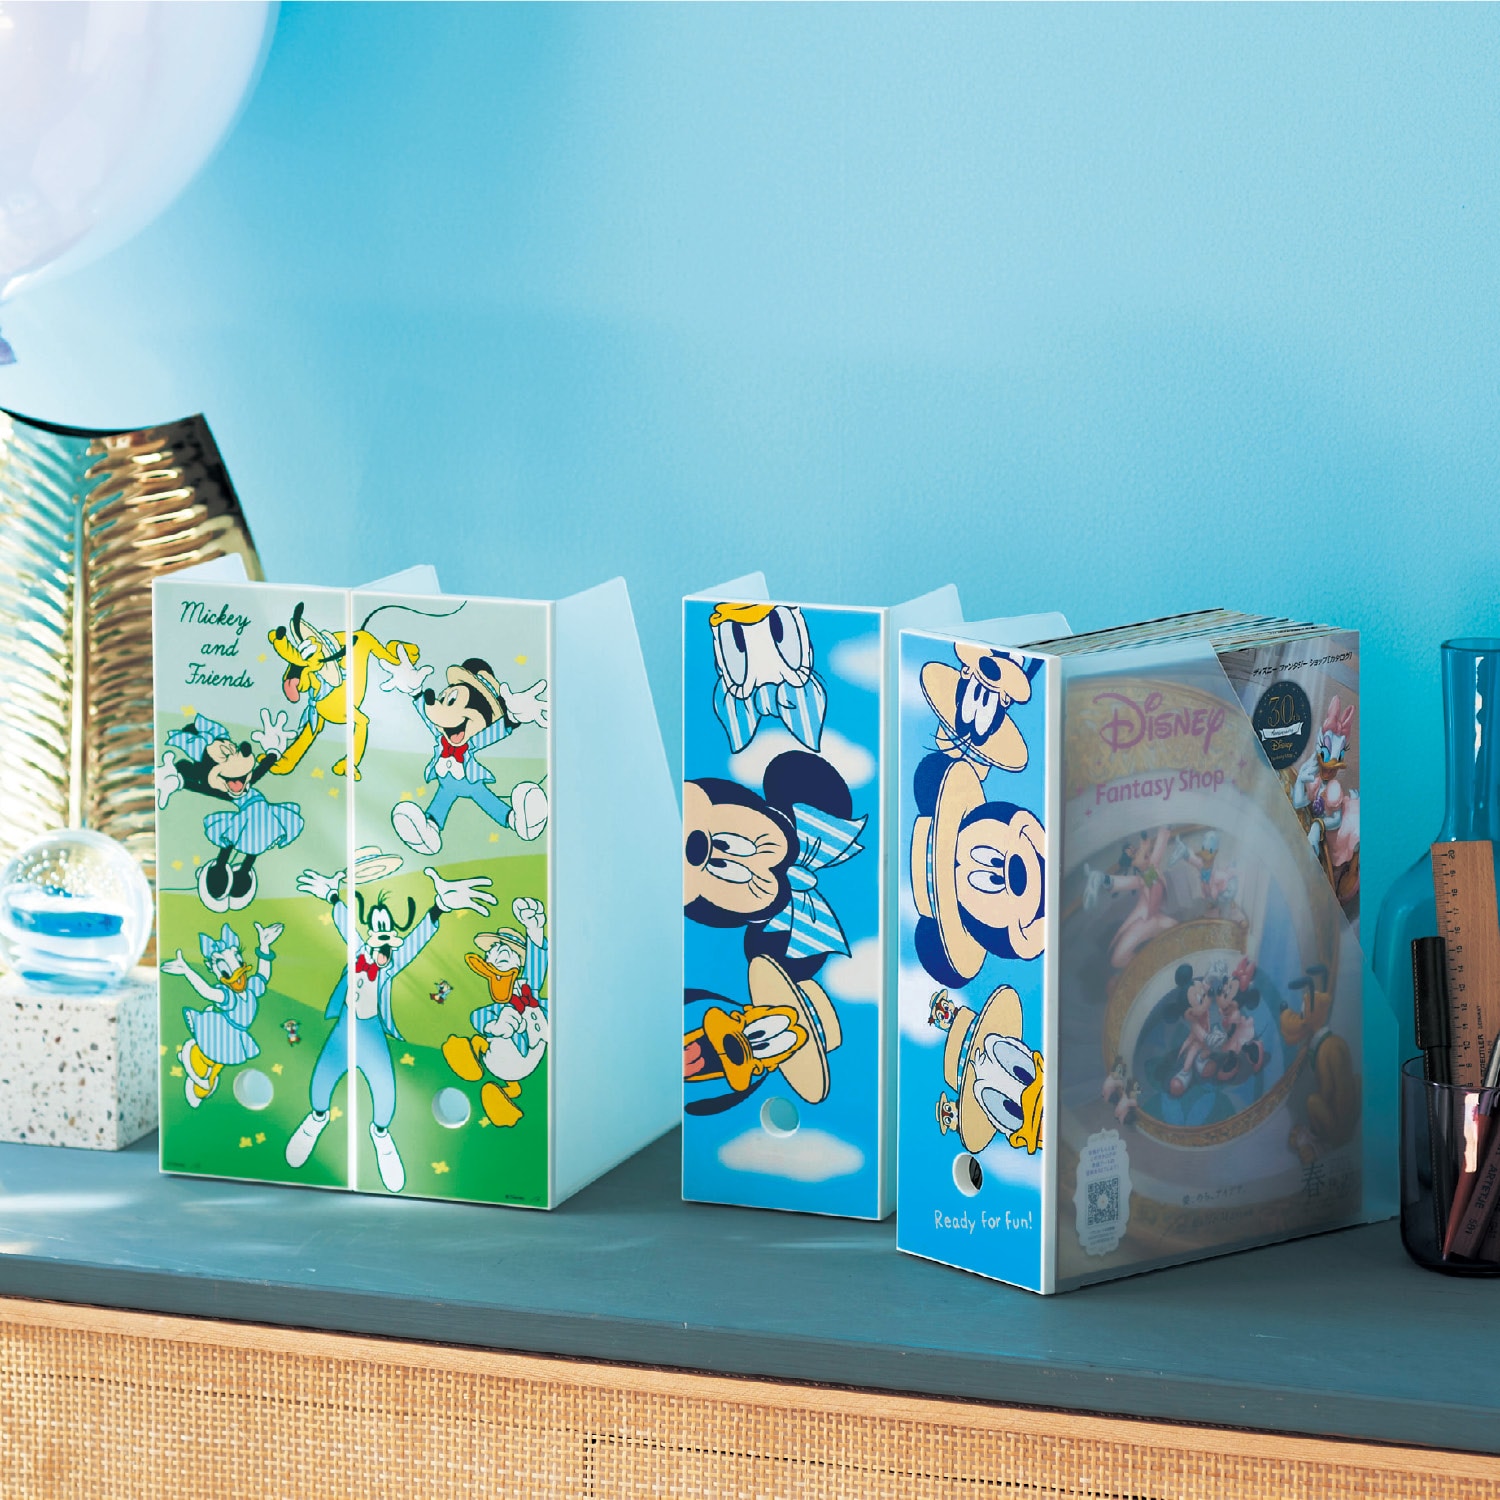 【ディズニー/Disney】【DisneyFantasyShop30周年限定品】 頑丈ファイルラック2柄セット「ミッキー & フレンズ」